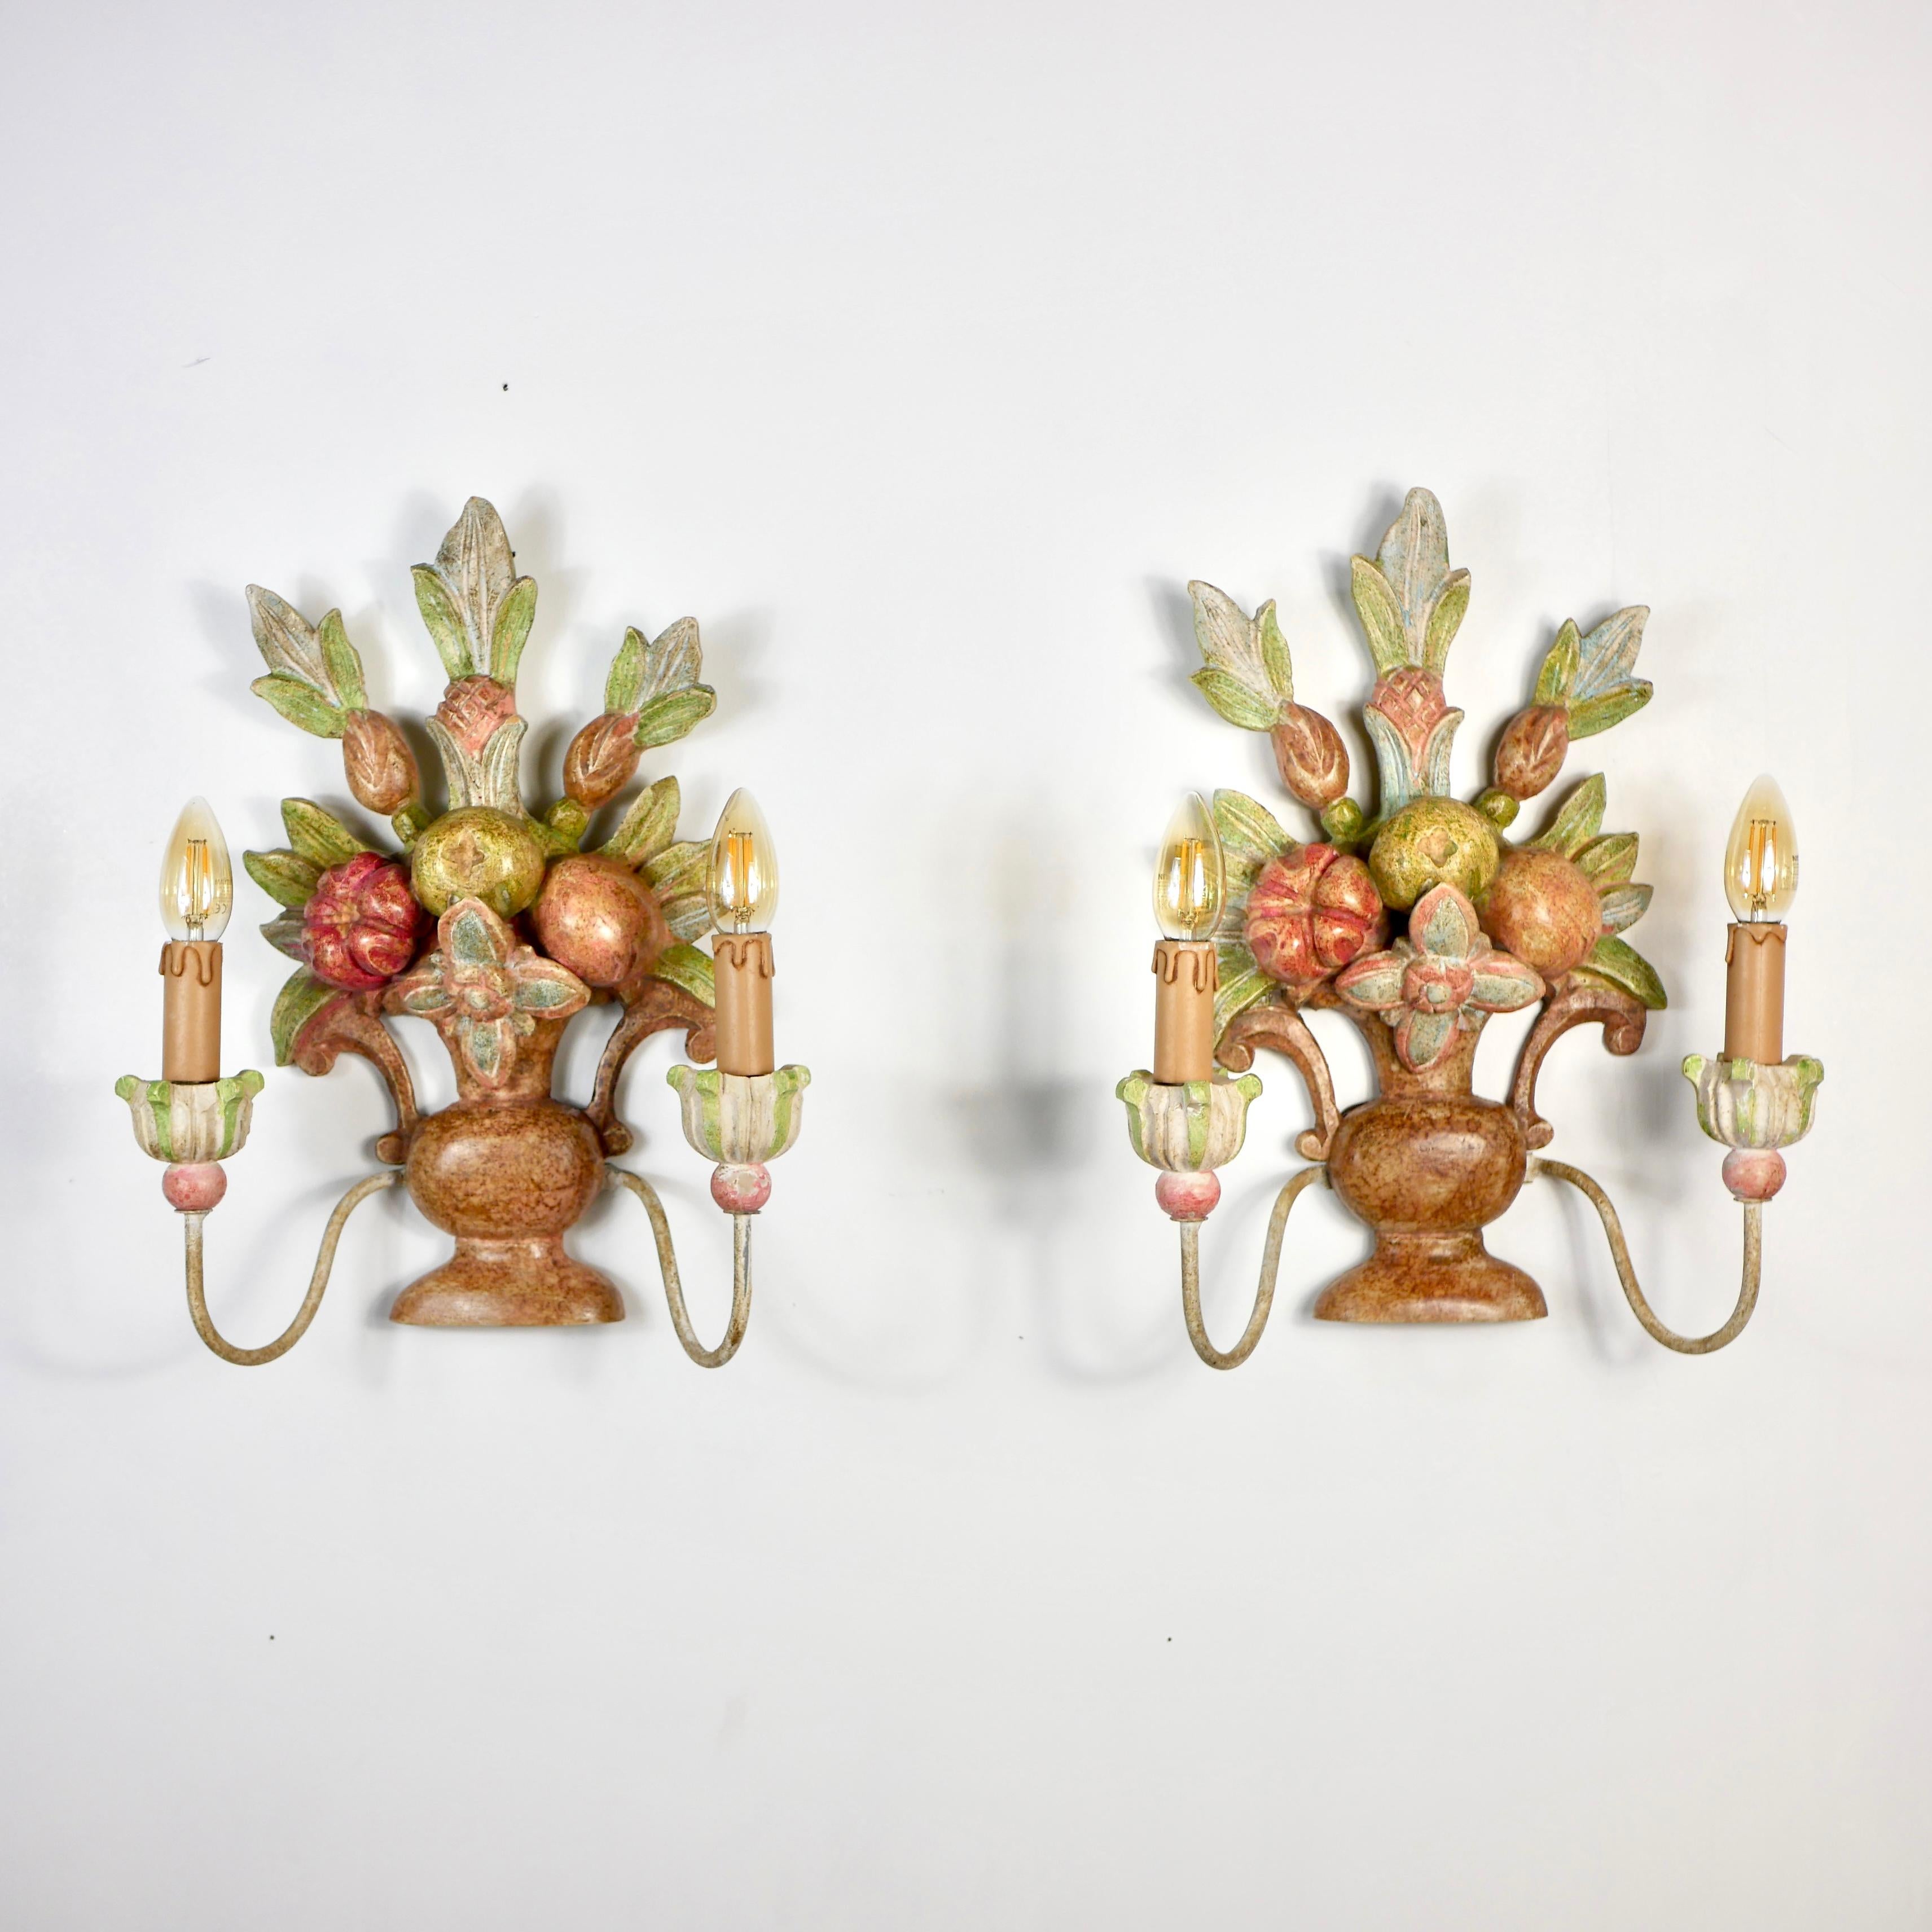 Schönes Paar handgeschnitzter Holzleuchter aus Italien vom Anfang des 20. Jahrhunderts, die Blumensträuße, Blätter und Früchte im Stil von Maison Jansen darstellen.
Jede Leuchte ist handbemalt und hat zwei 